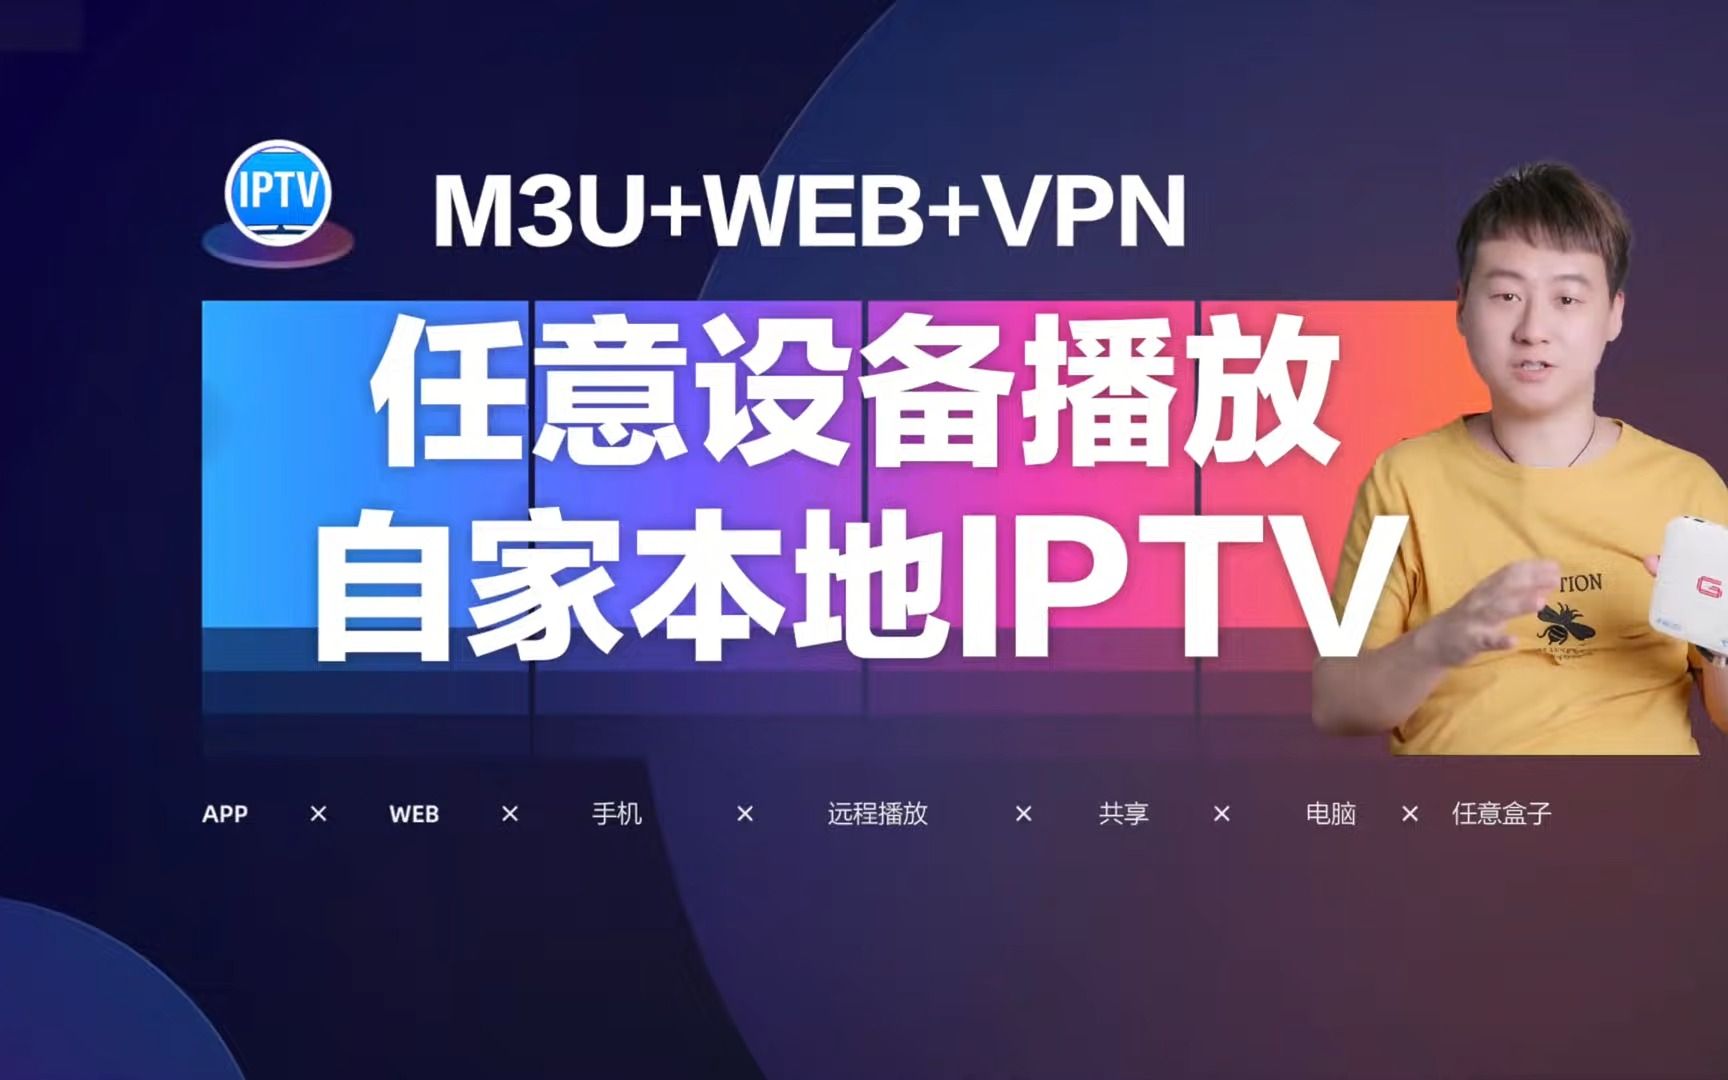 任意设备实现播放自家本地IPTV，外网也可以播放直播M3U+WEB+VPN-2K